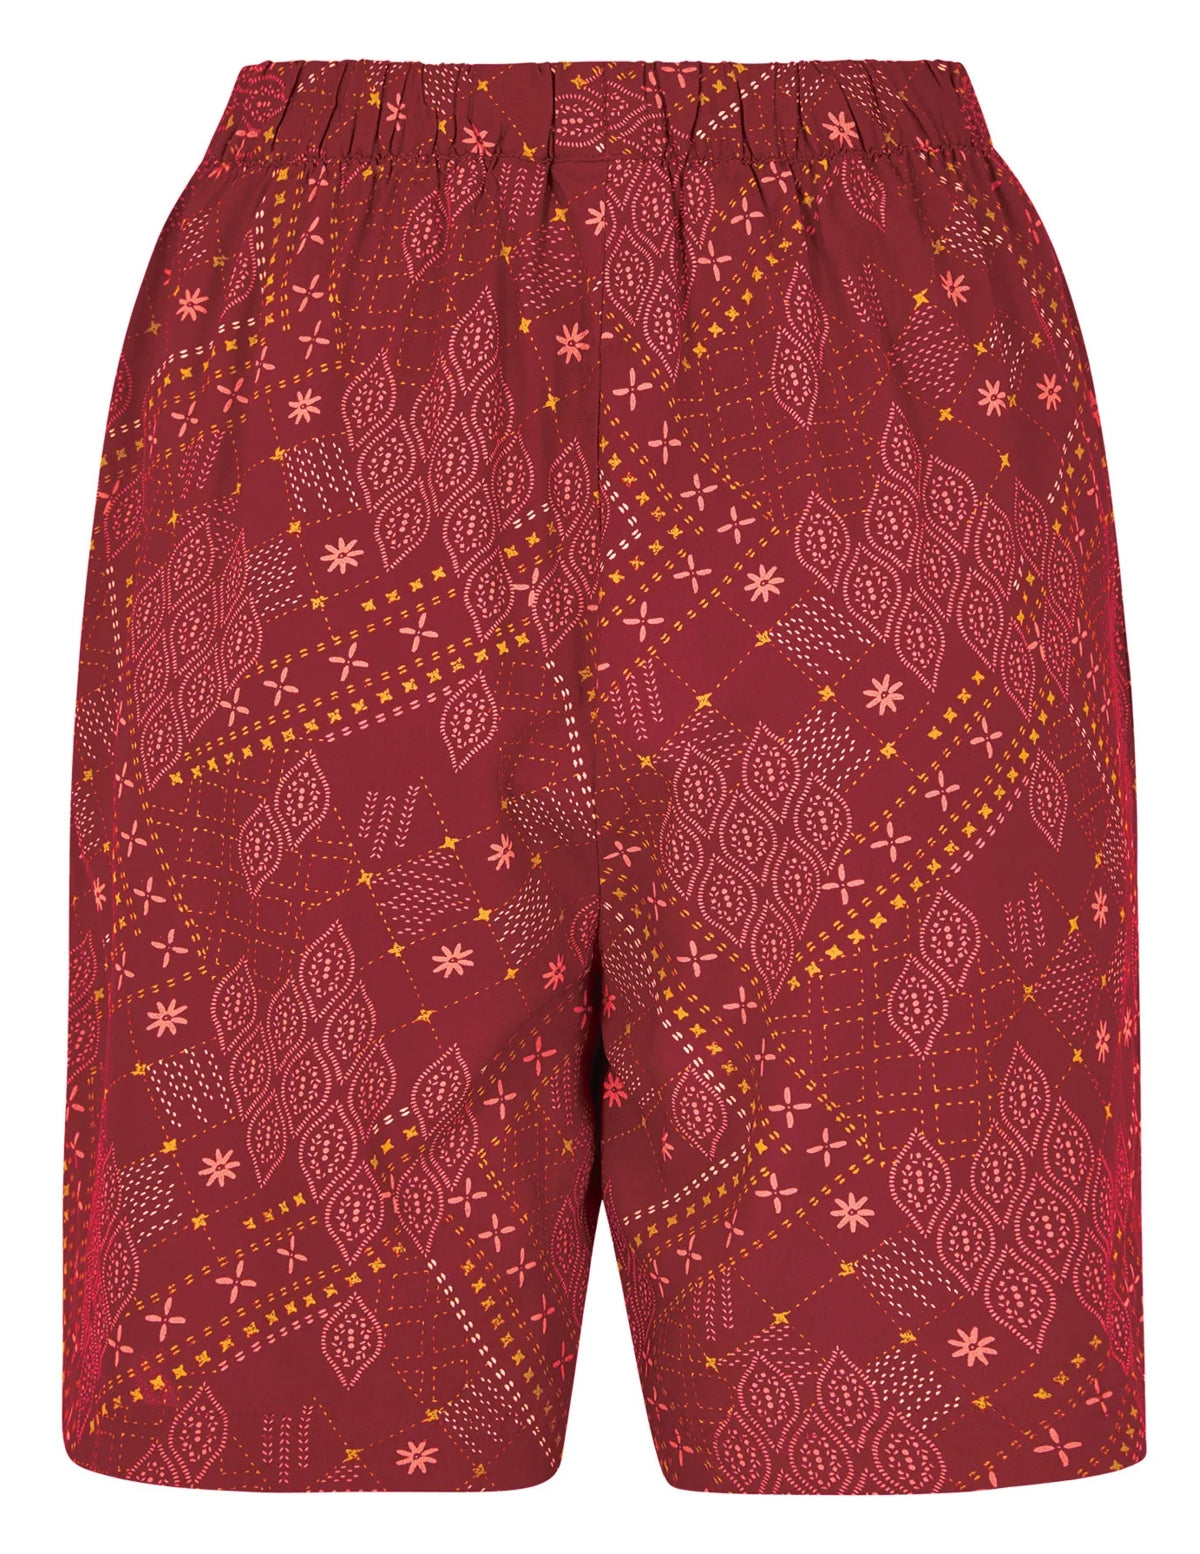 Chilli Red women's Weird Fish Sundance lightweight viscose shorts.